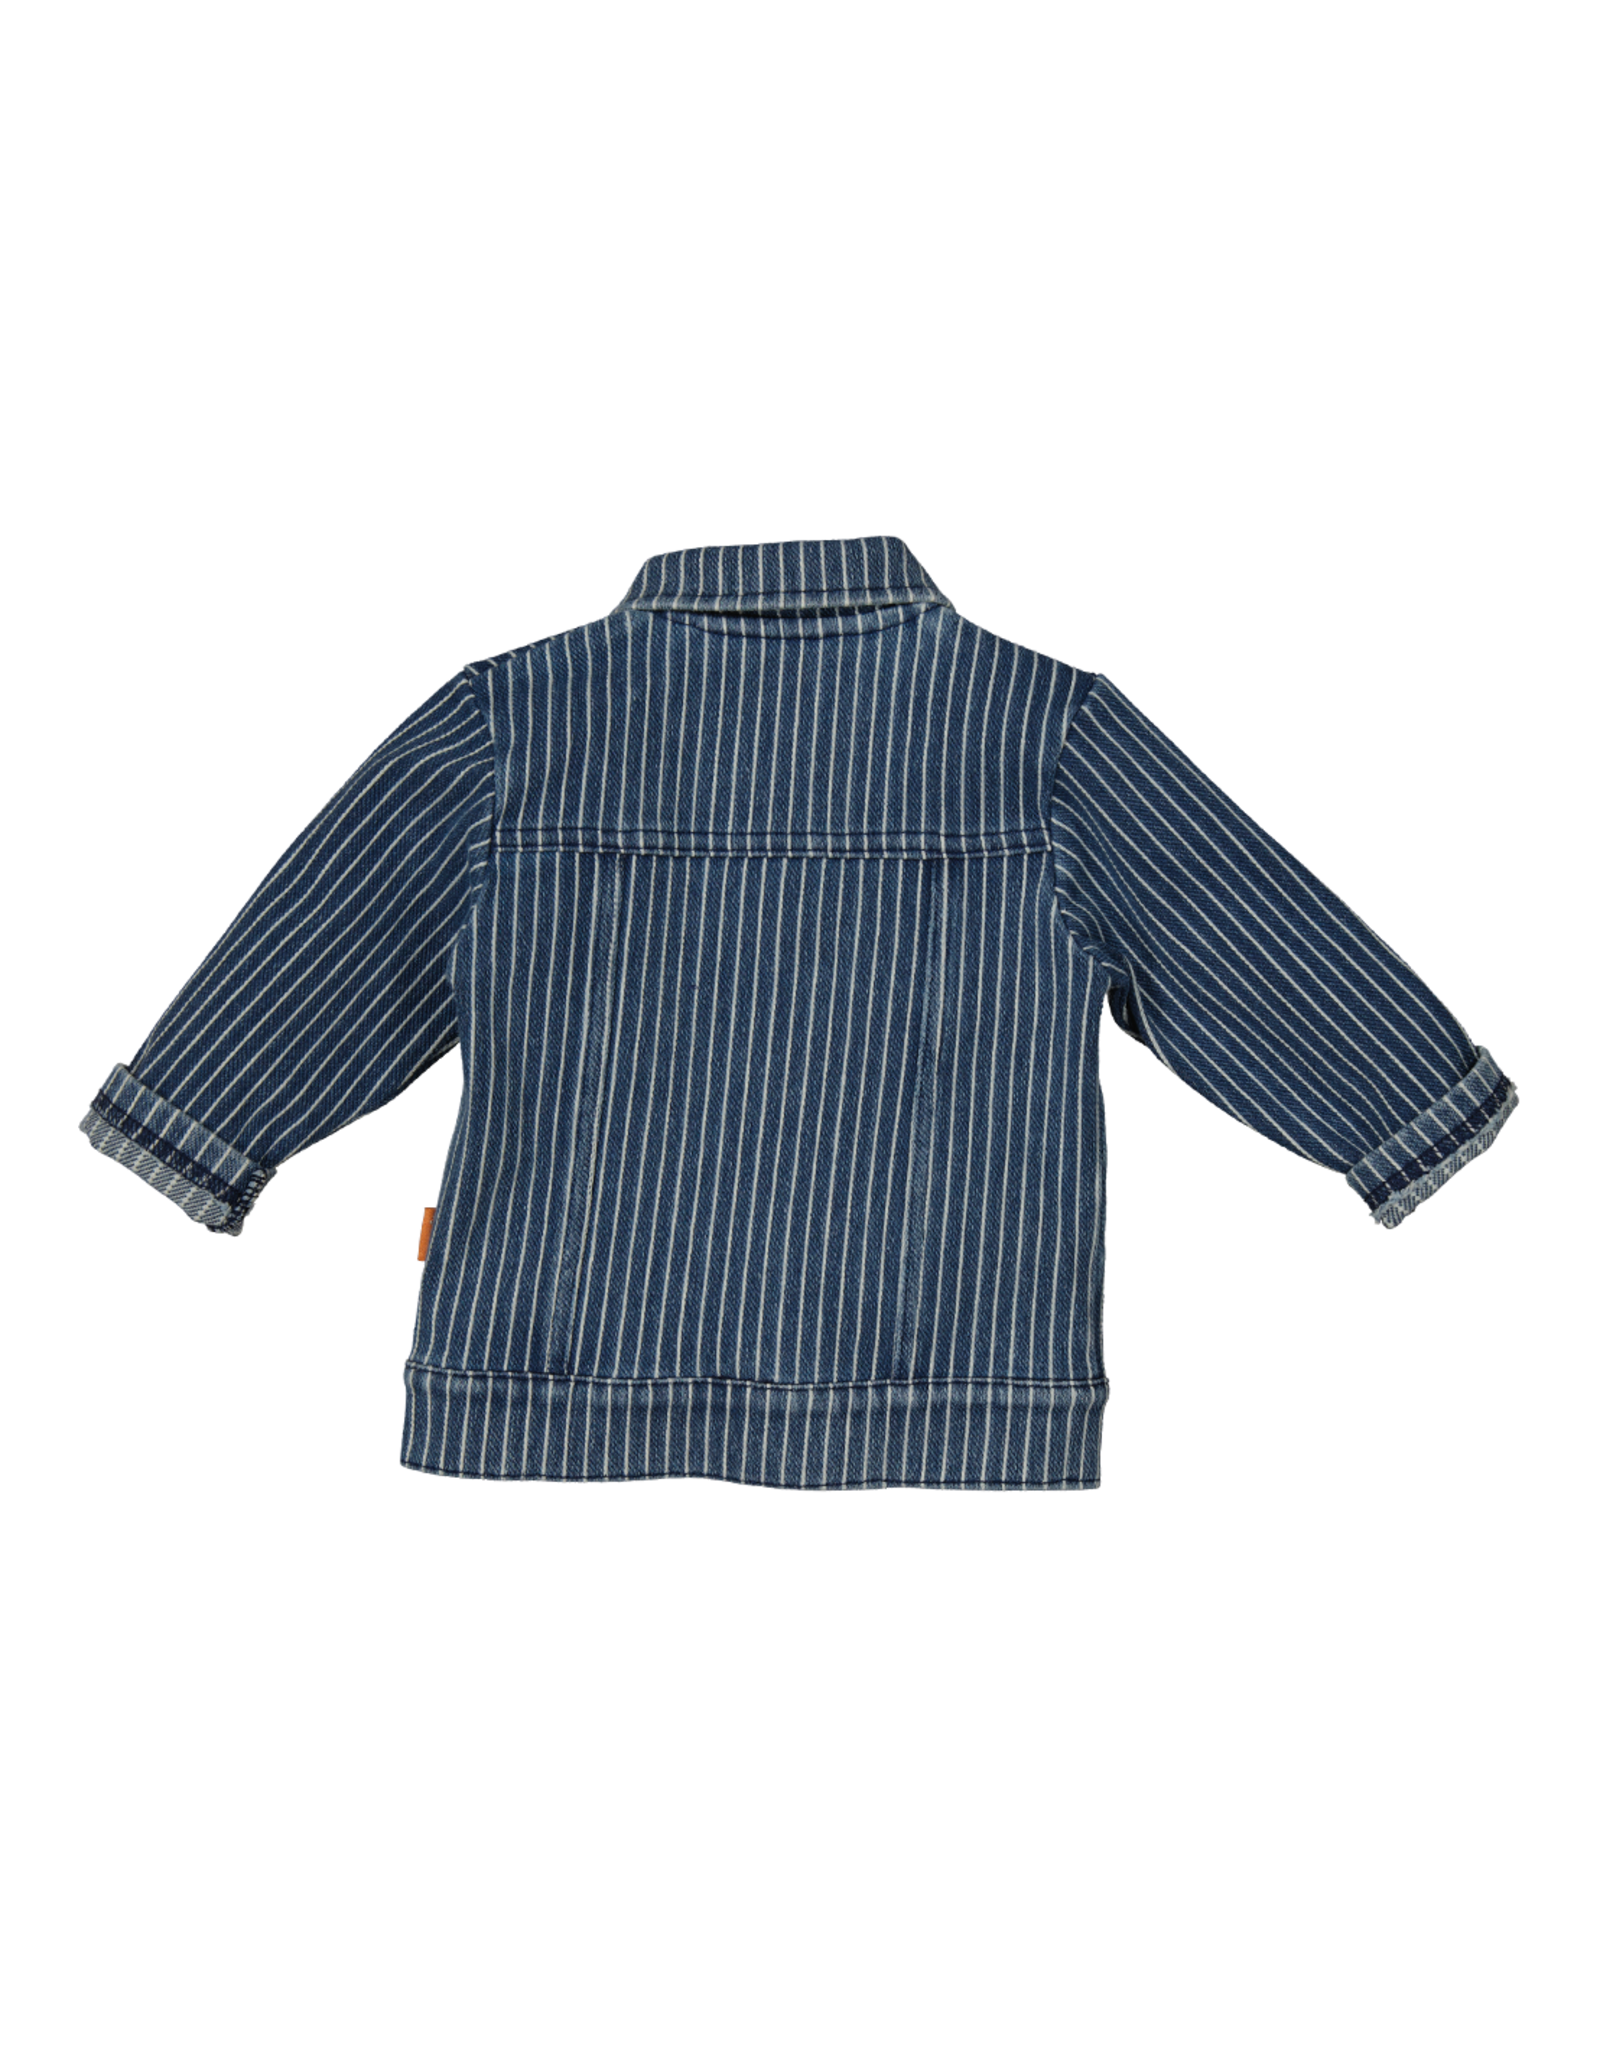 BESS Jacket Denim Striped Stone Wash Z24